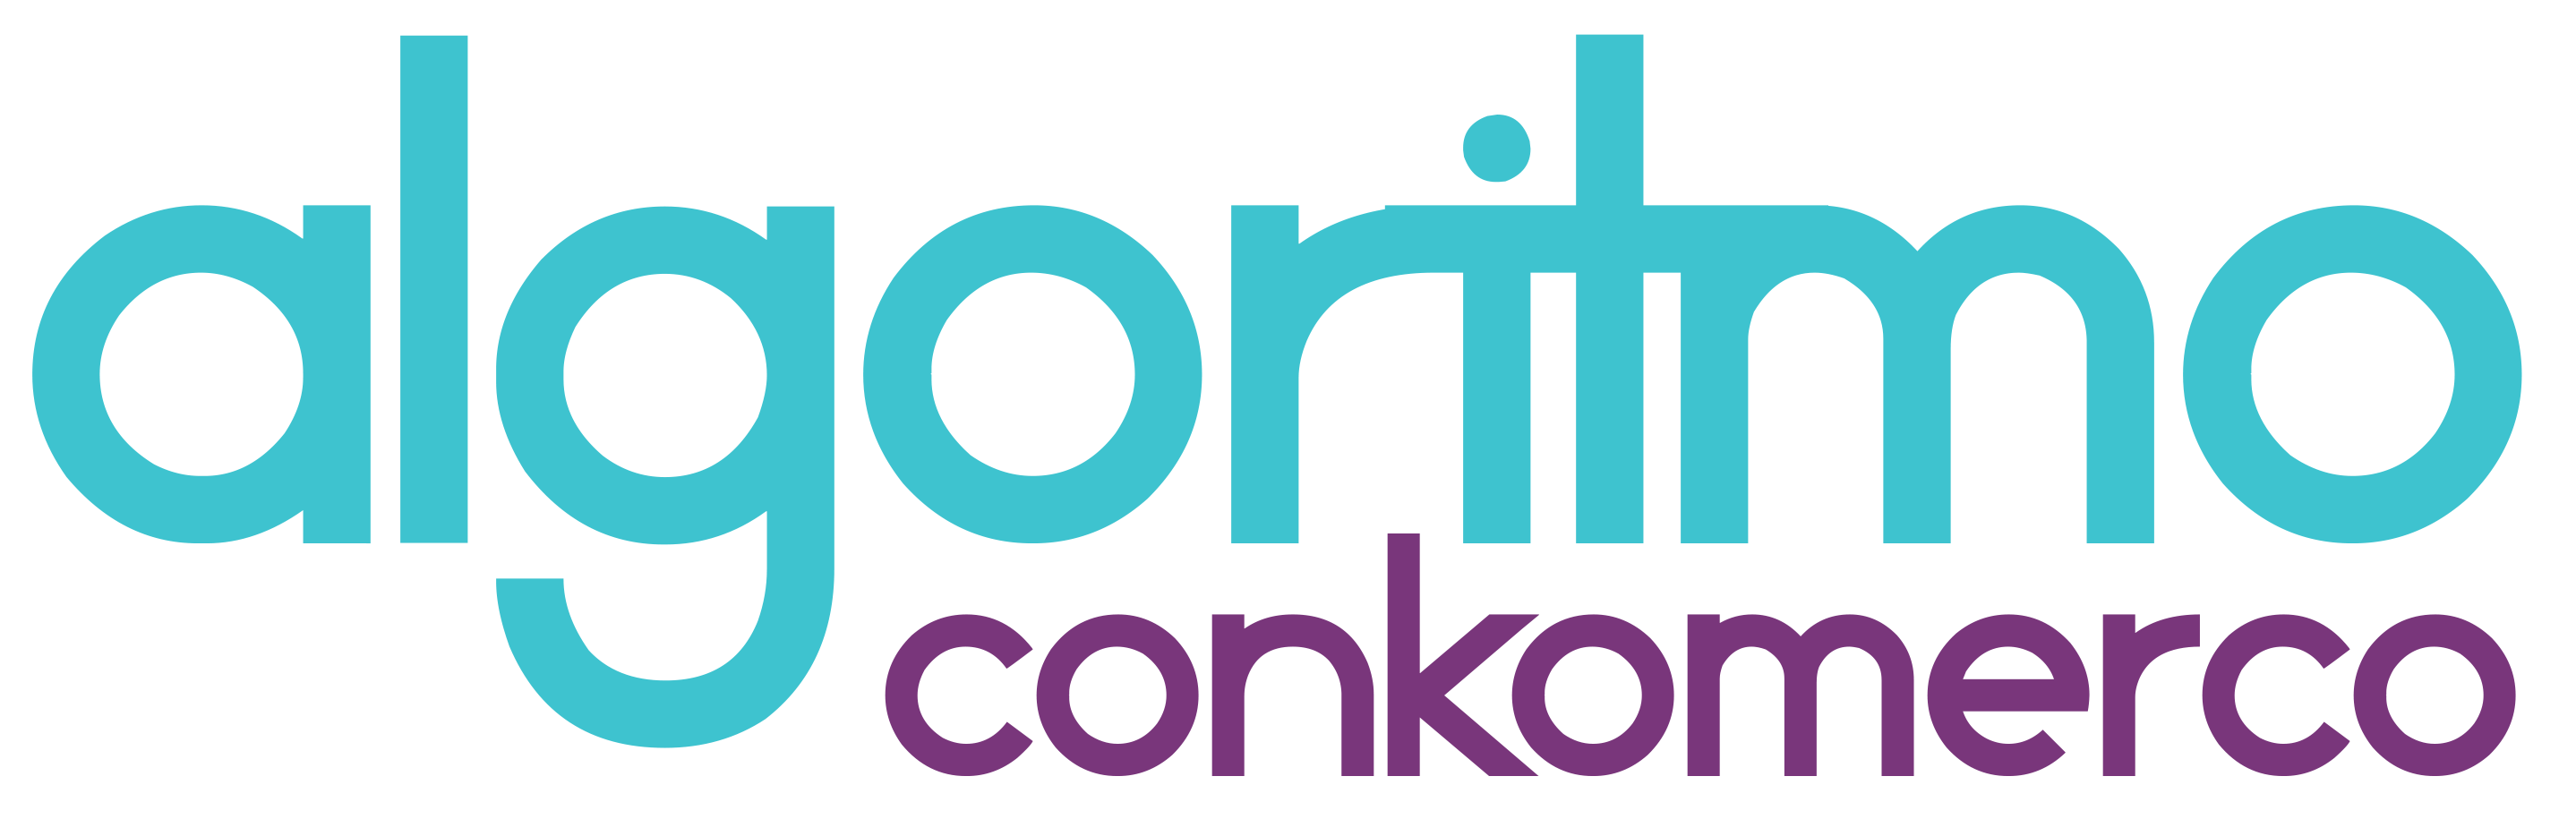 Logo ConKomerco